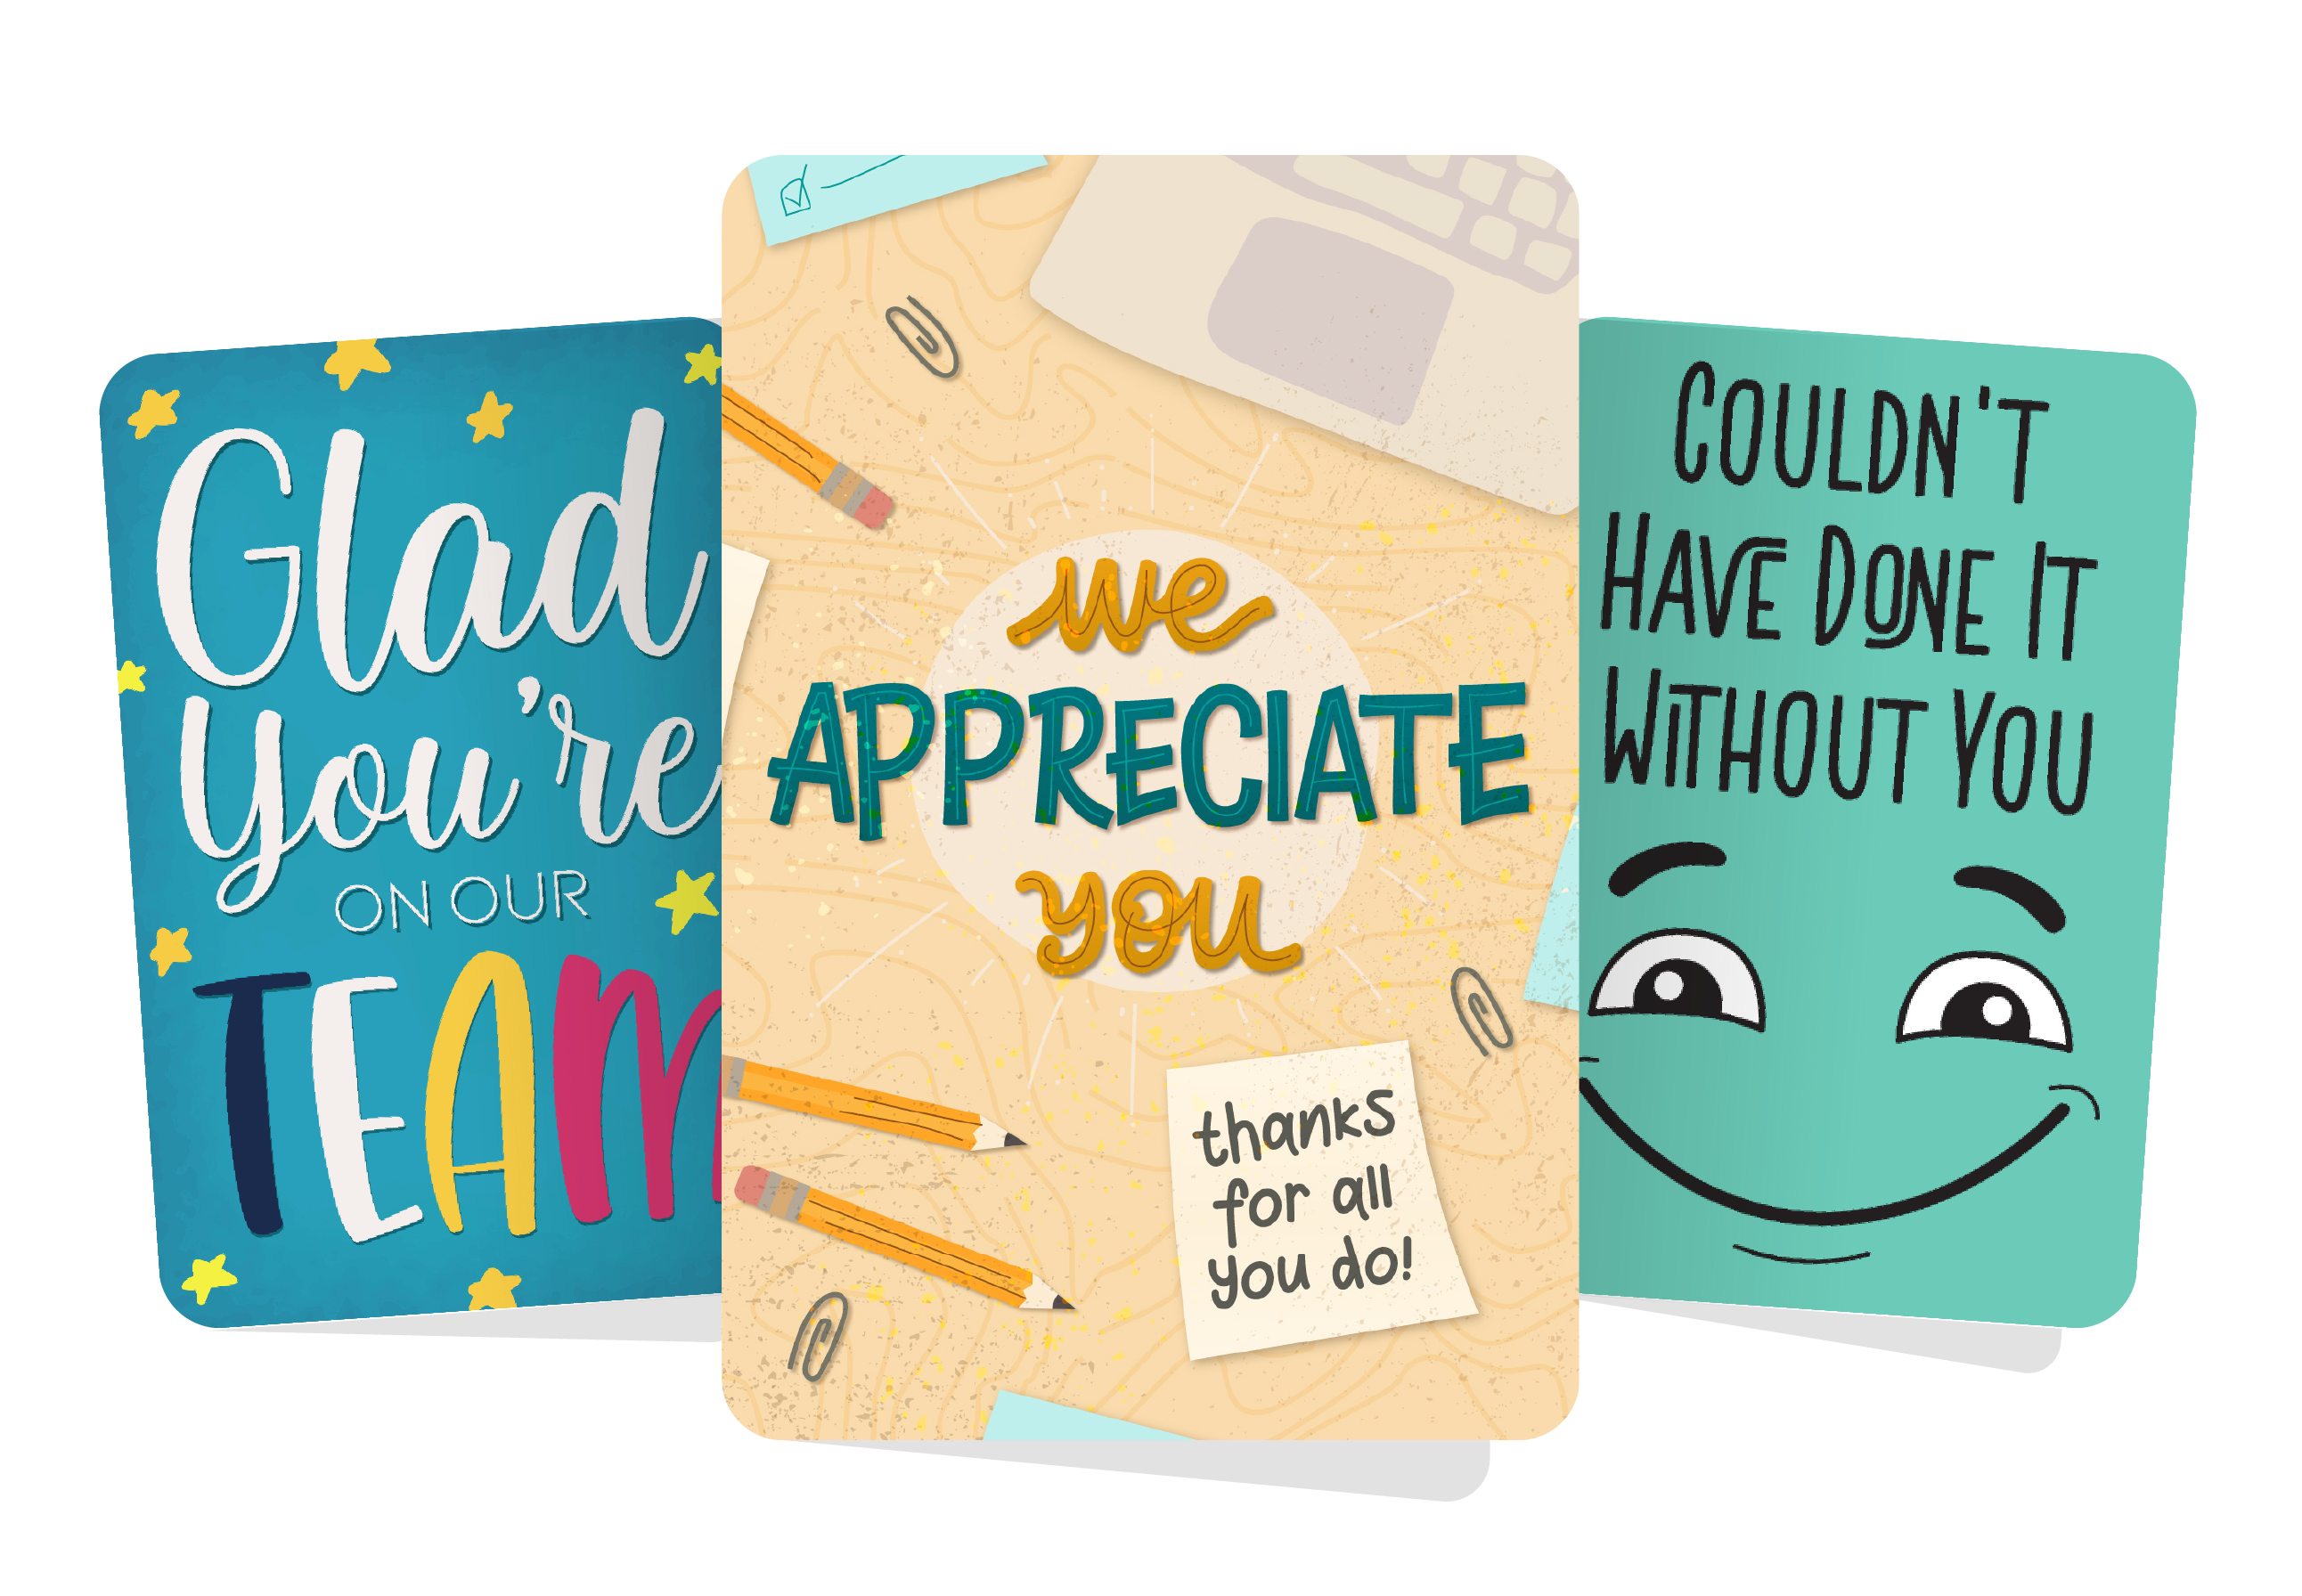 Employee Appreciation Ecards: Send a Virtual Employee Appreciation Card  Today